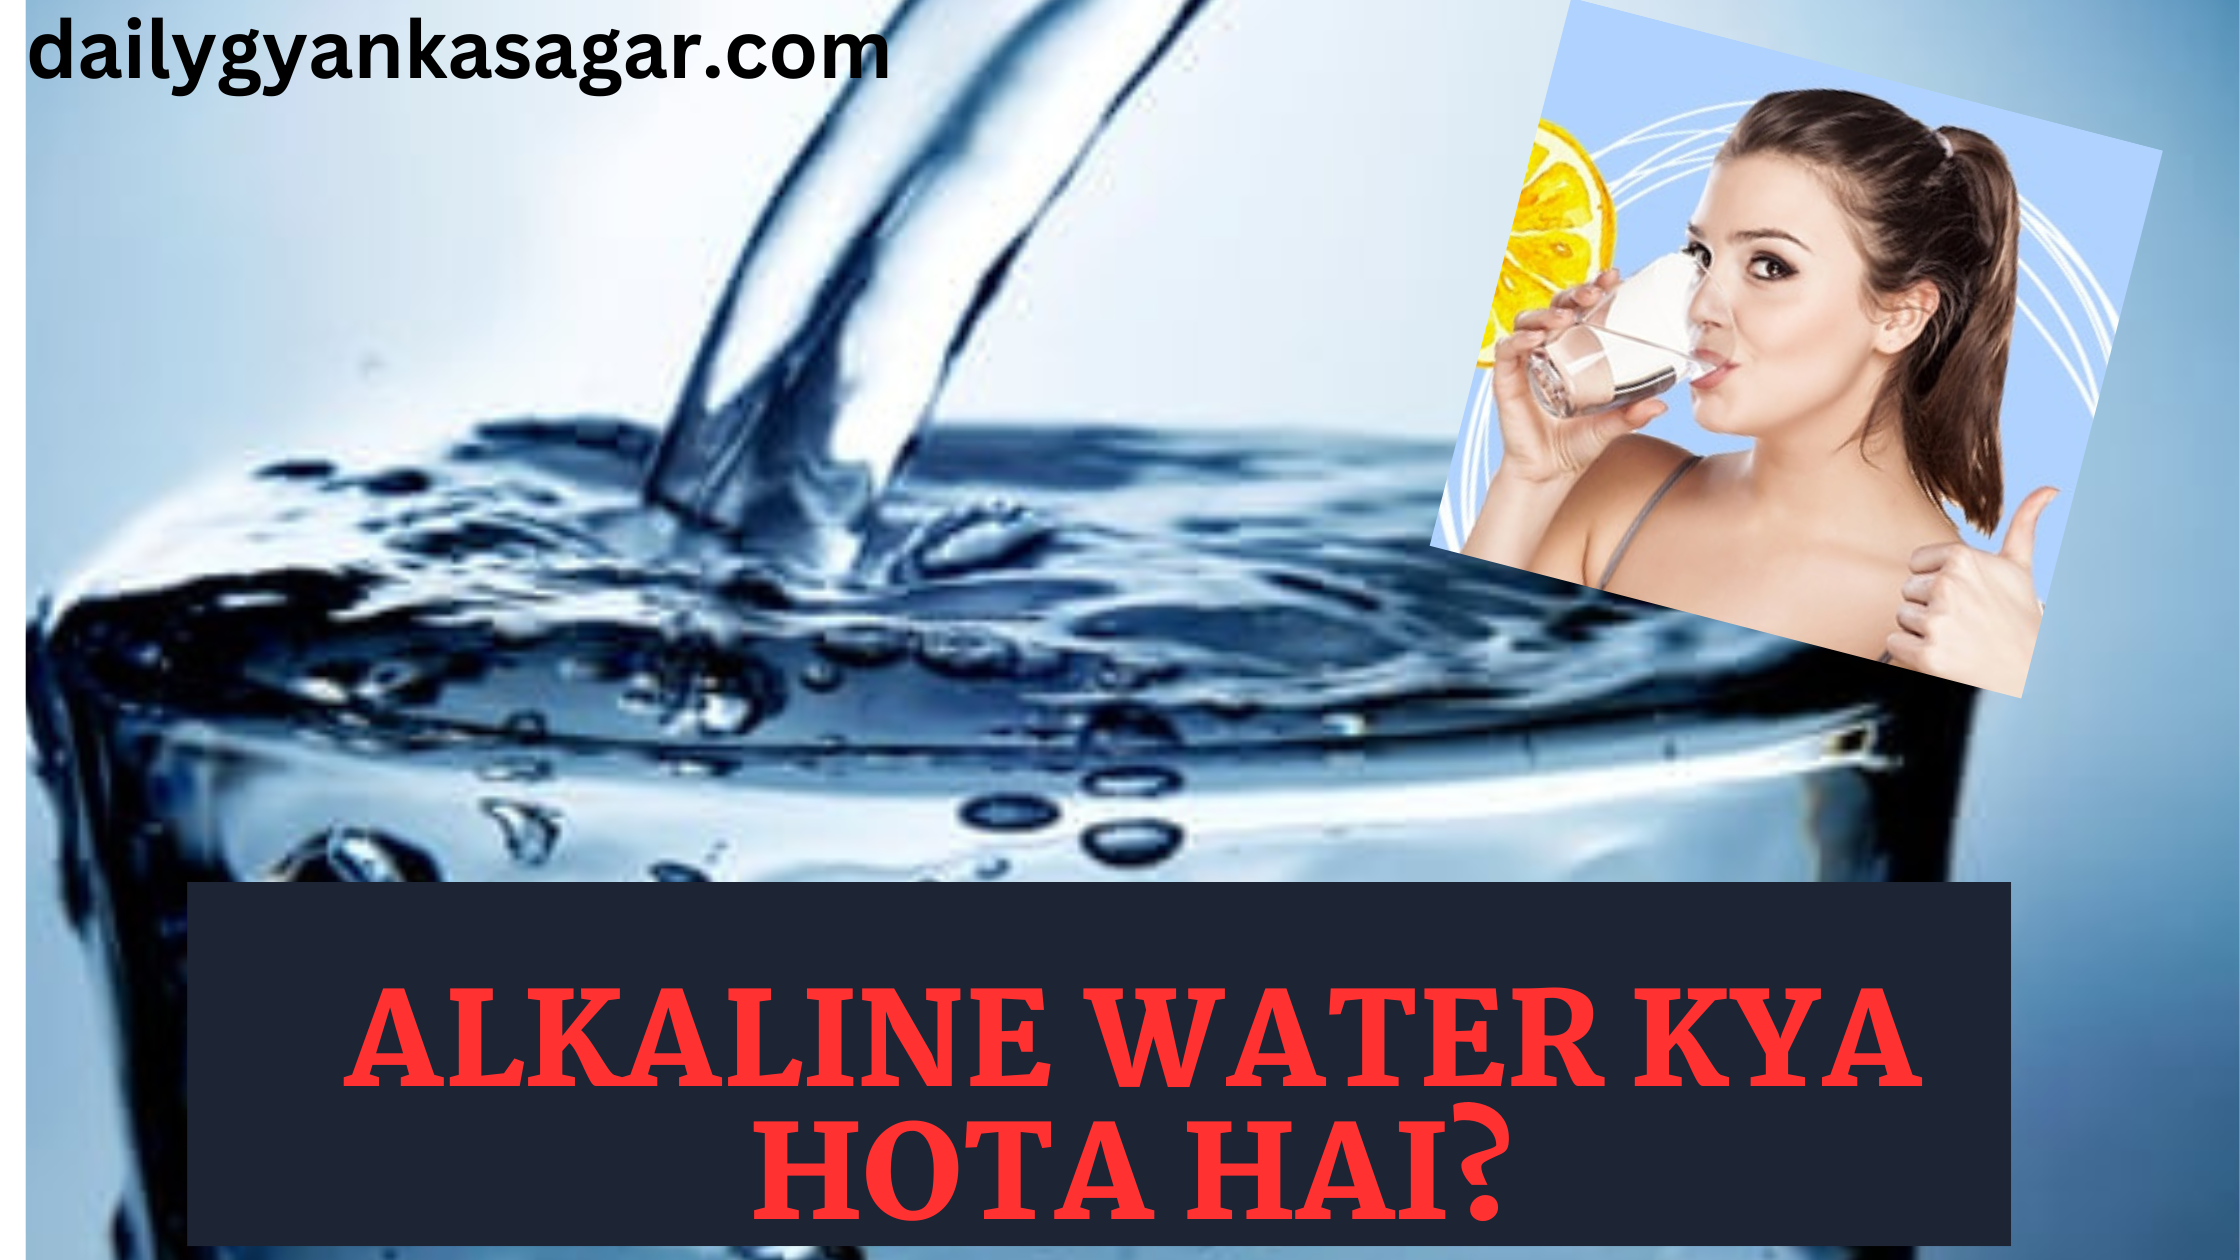 Alkaline Water Kya Hota Hai?